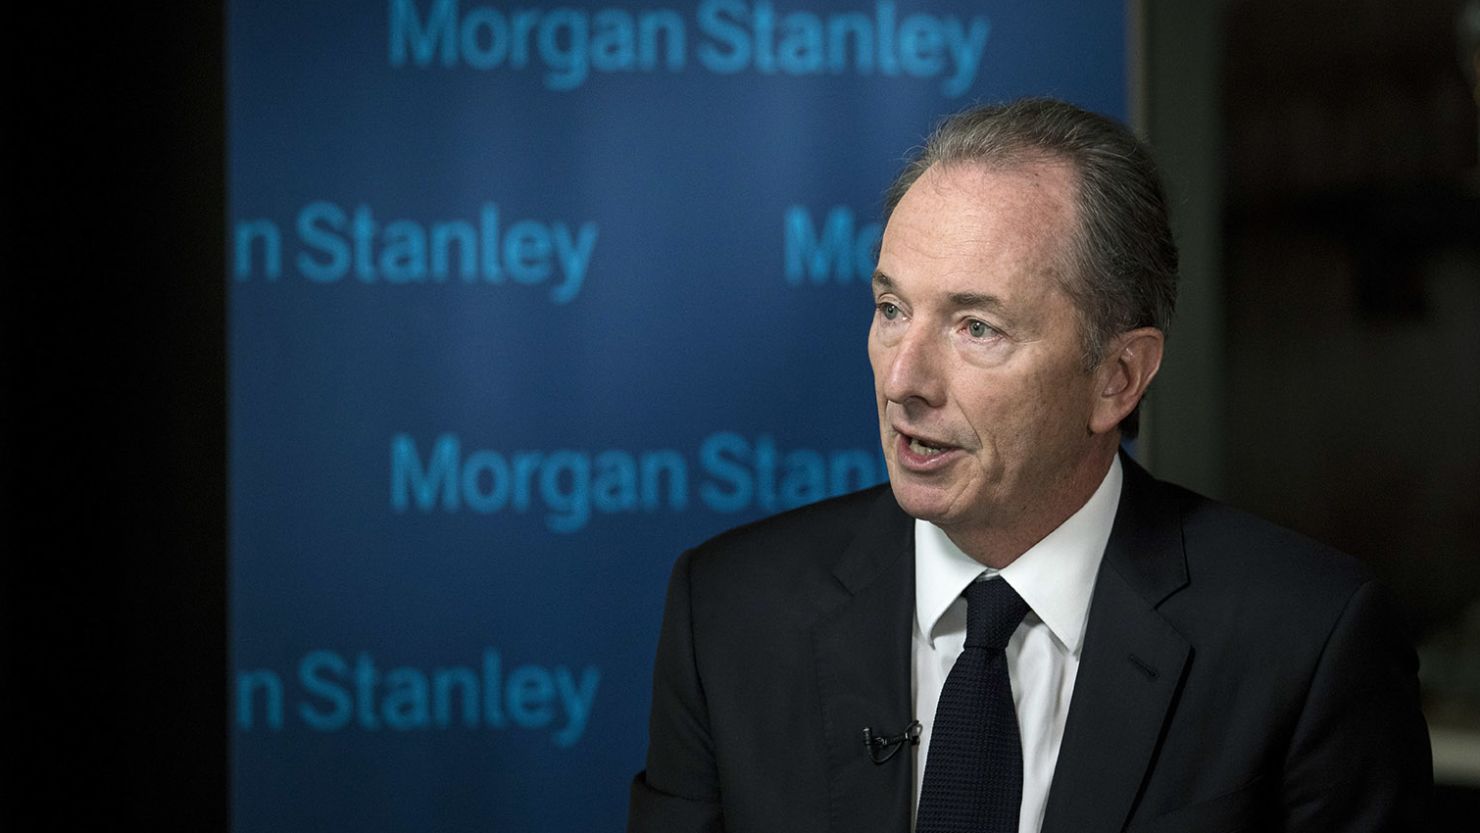 Morgan Stanley's Global Head of Prime Brokerage Steps Down - WSJ